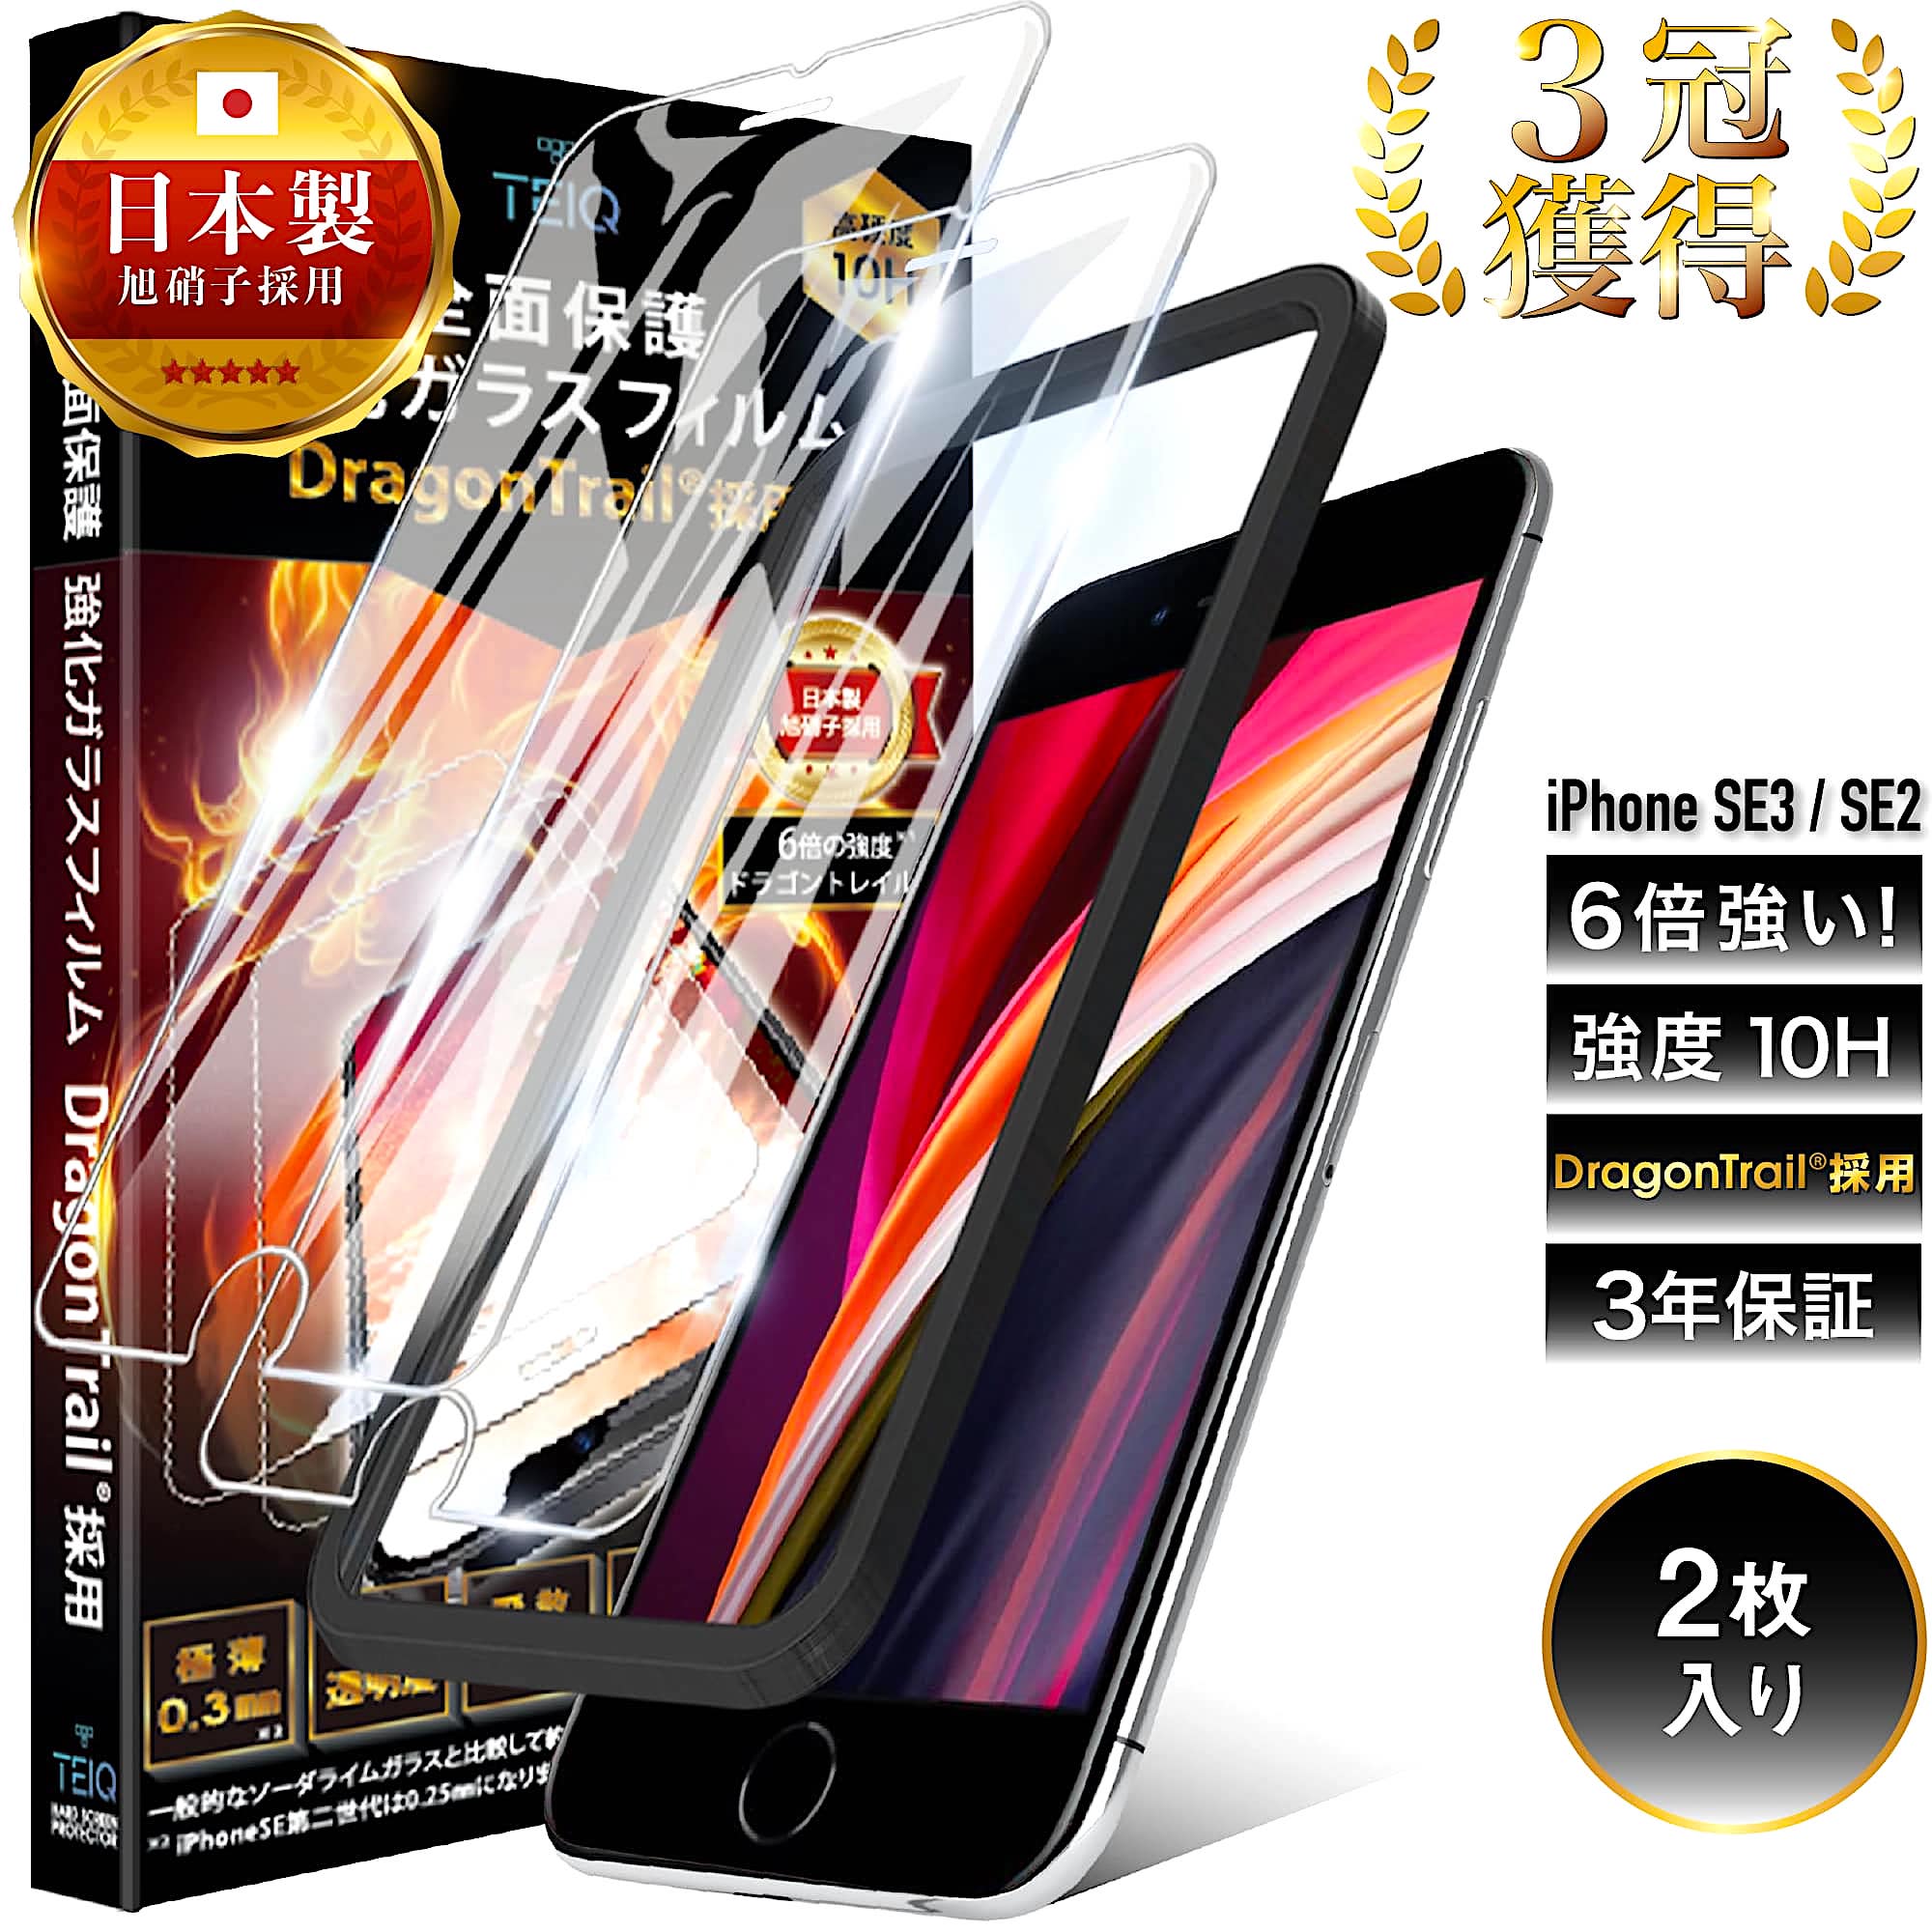 ドラゴントレイル iPhone SE3 SE2 (第3世代/第2世代) ガラスフィルム 全面保護 10H 強化ガラス 保護フィルム iPhoneSE3 iPhoneSE2 アイフォン SE 2022 2020 全面 ガラス フィルム 日本製 旭硝子 TEIQ 